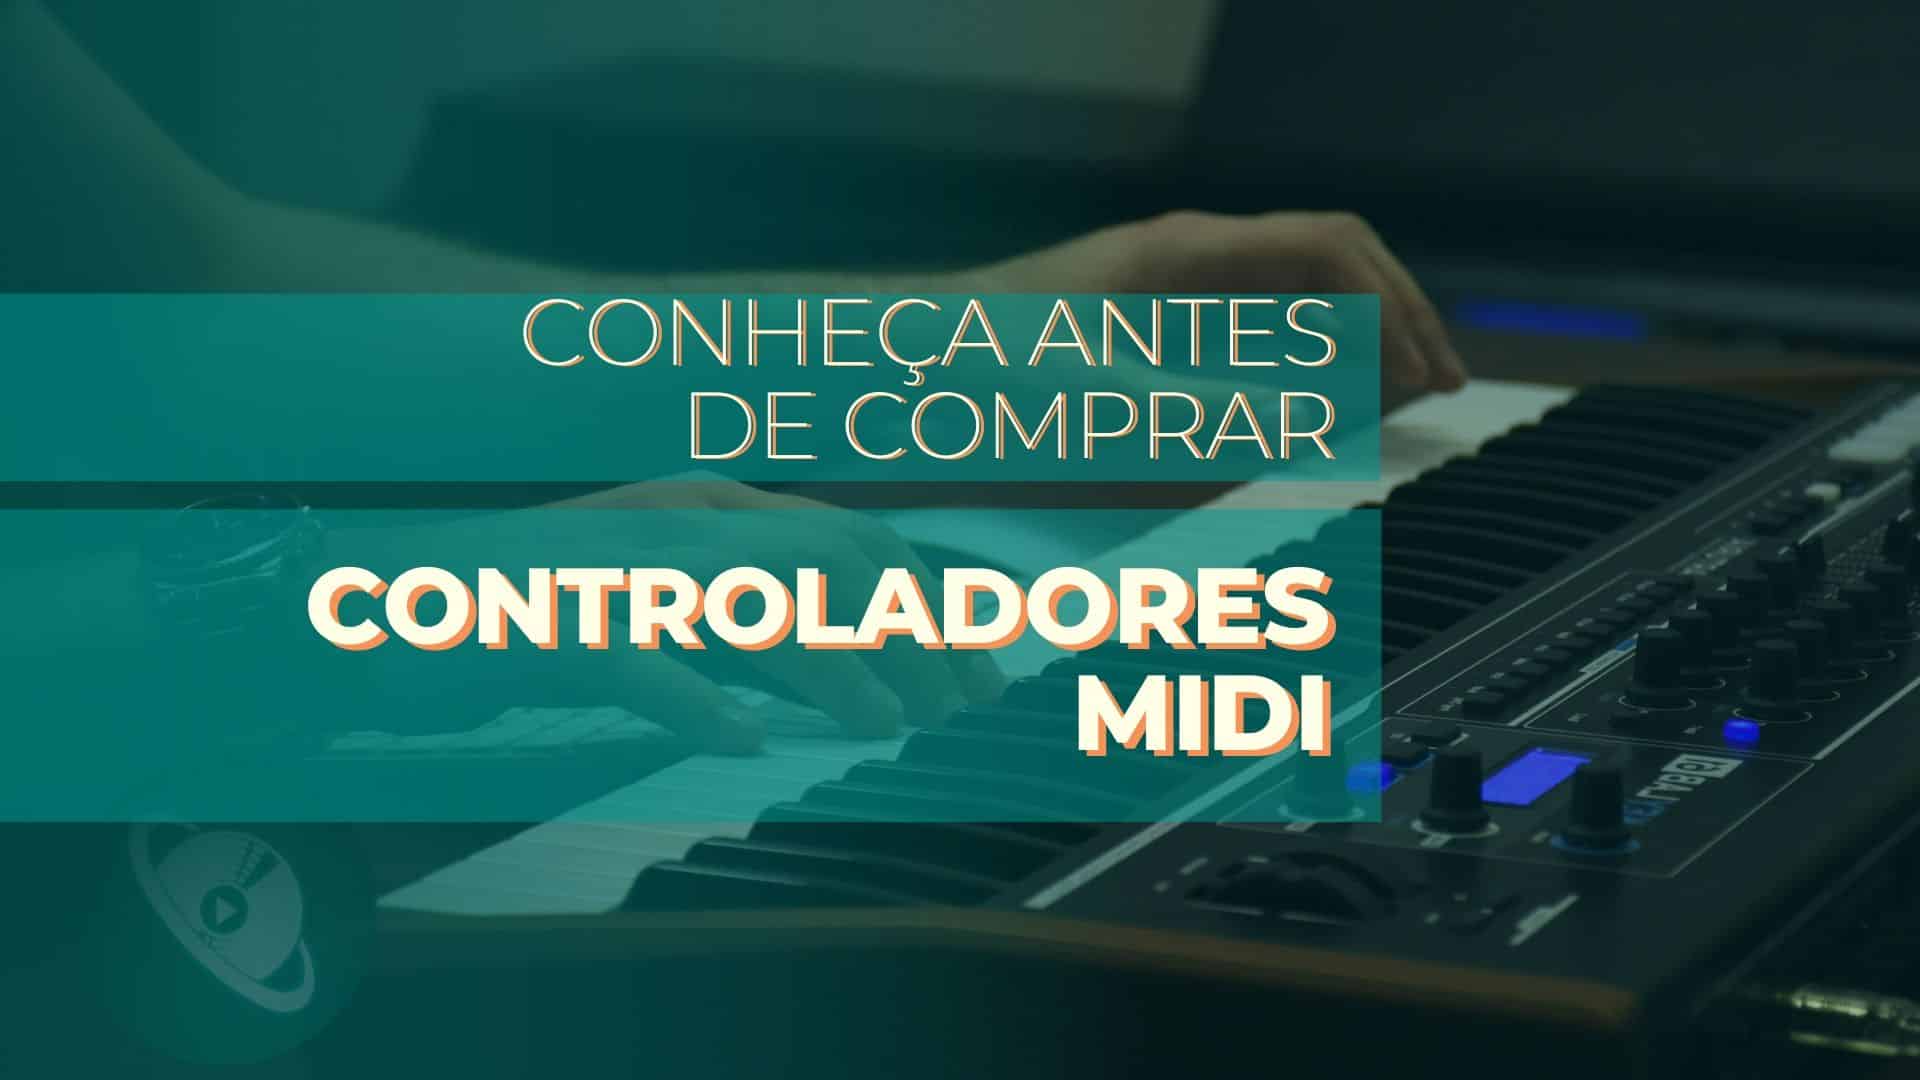 Procurando Controlador MIDI? Conheça e compare